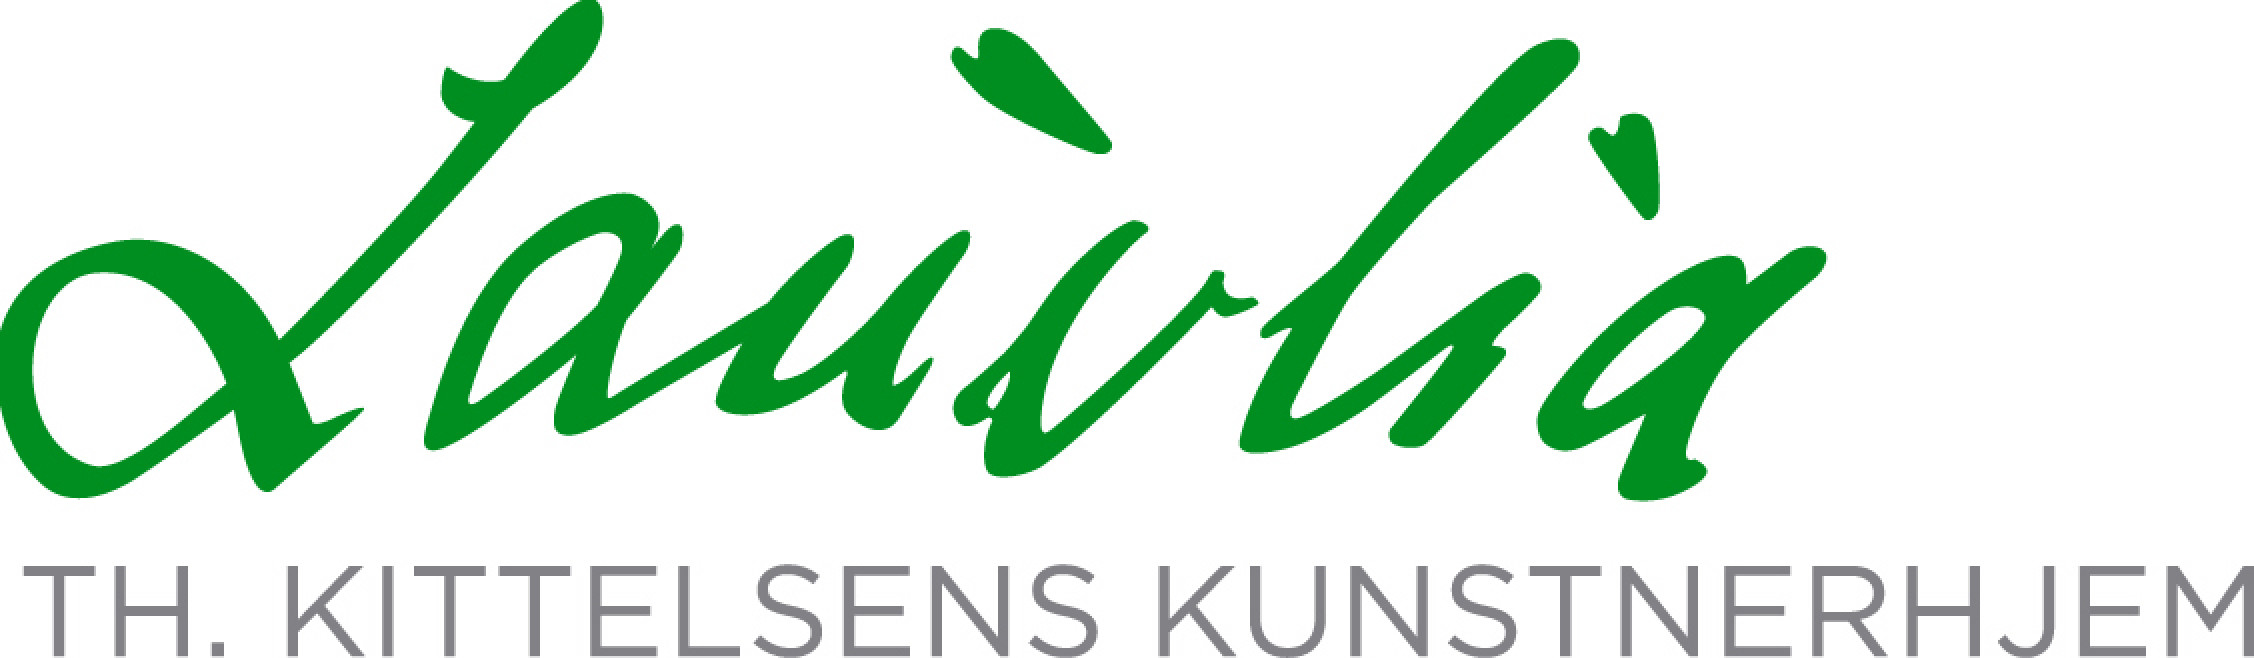 Logo - Lauvlia - Theodor Kittelsens hjem